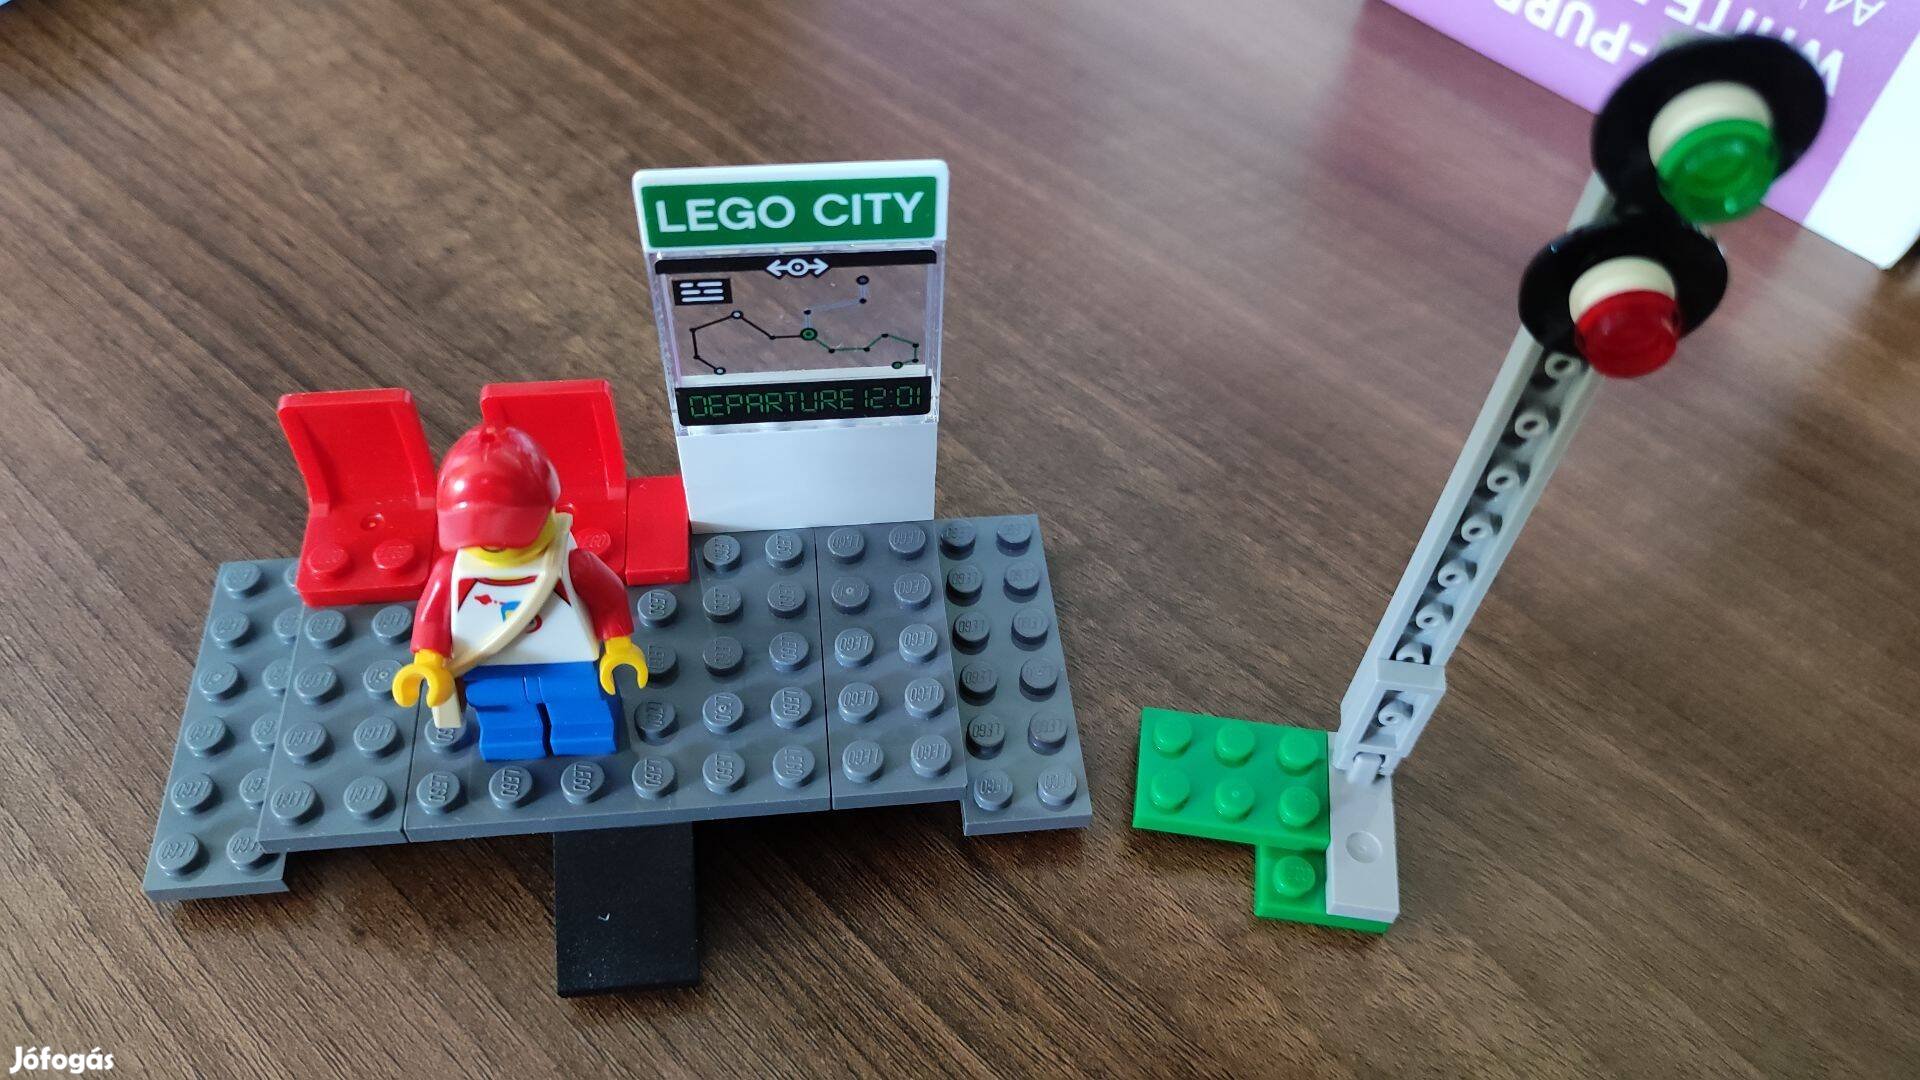 Eladó Lego 60197 peron, jelzőlámpa + figura + teljes leírás (5 db)